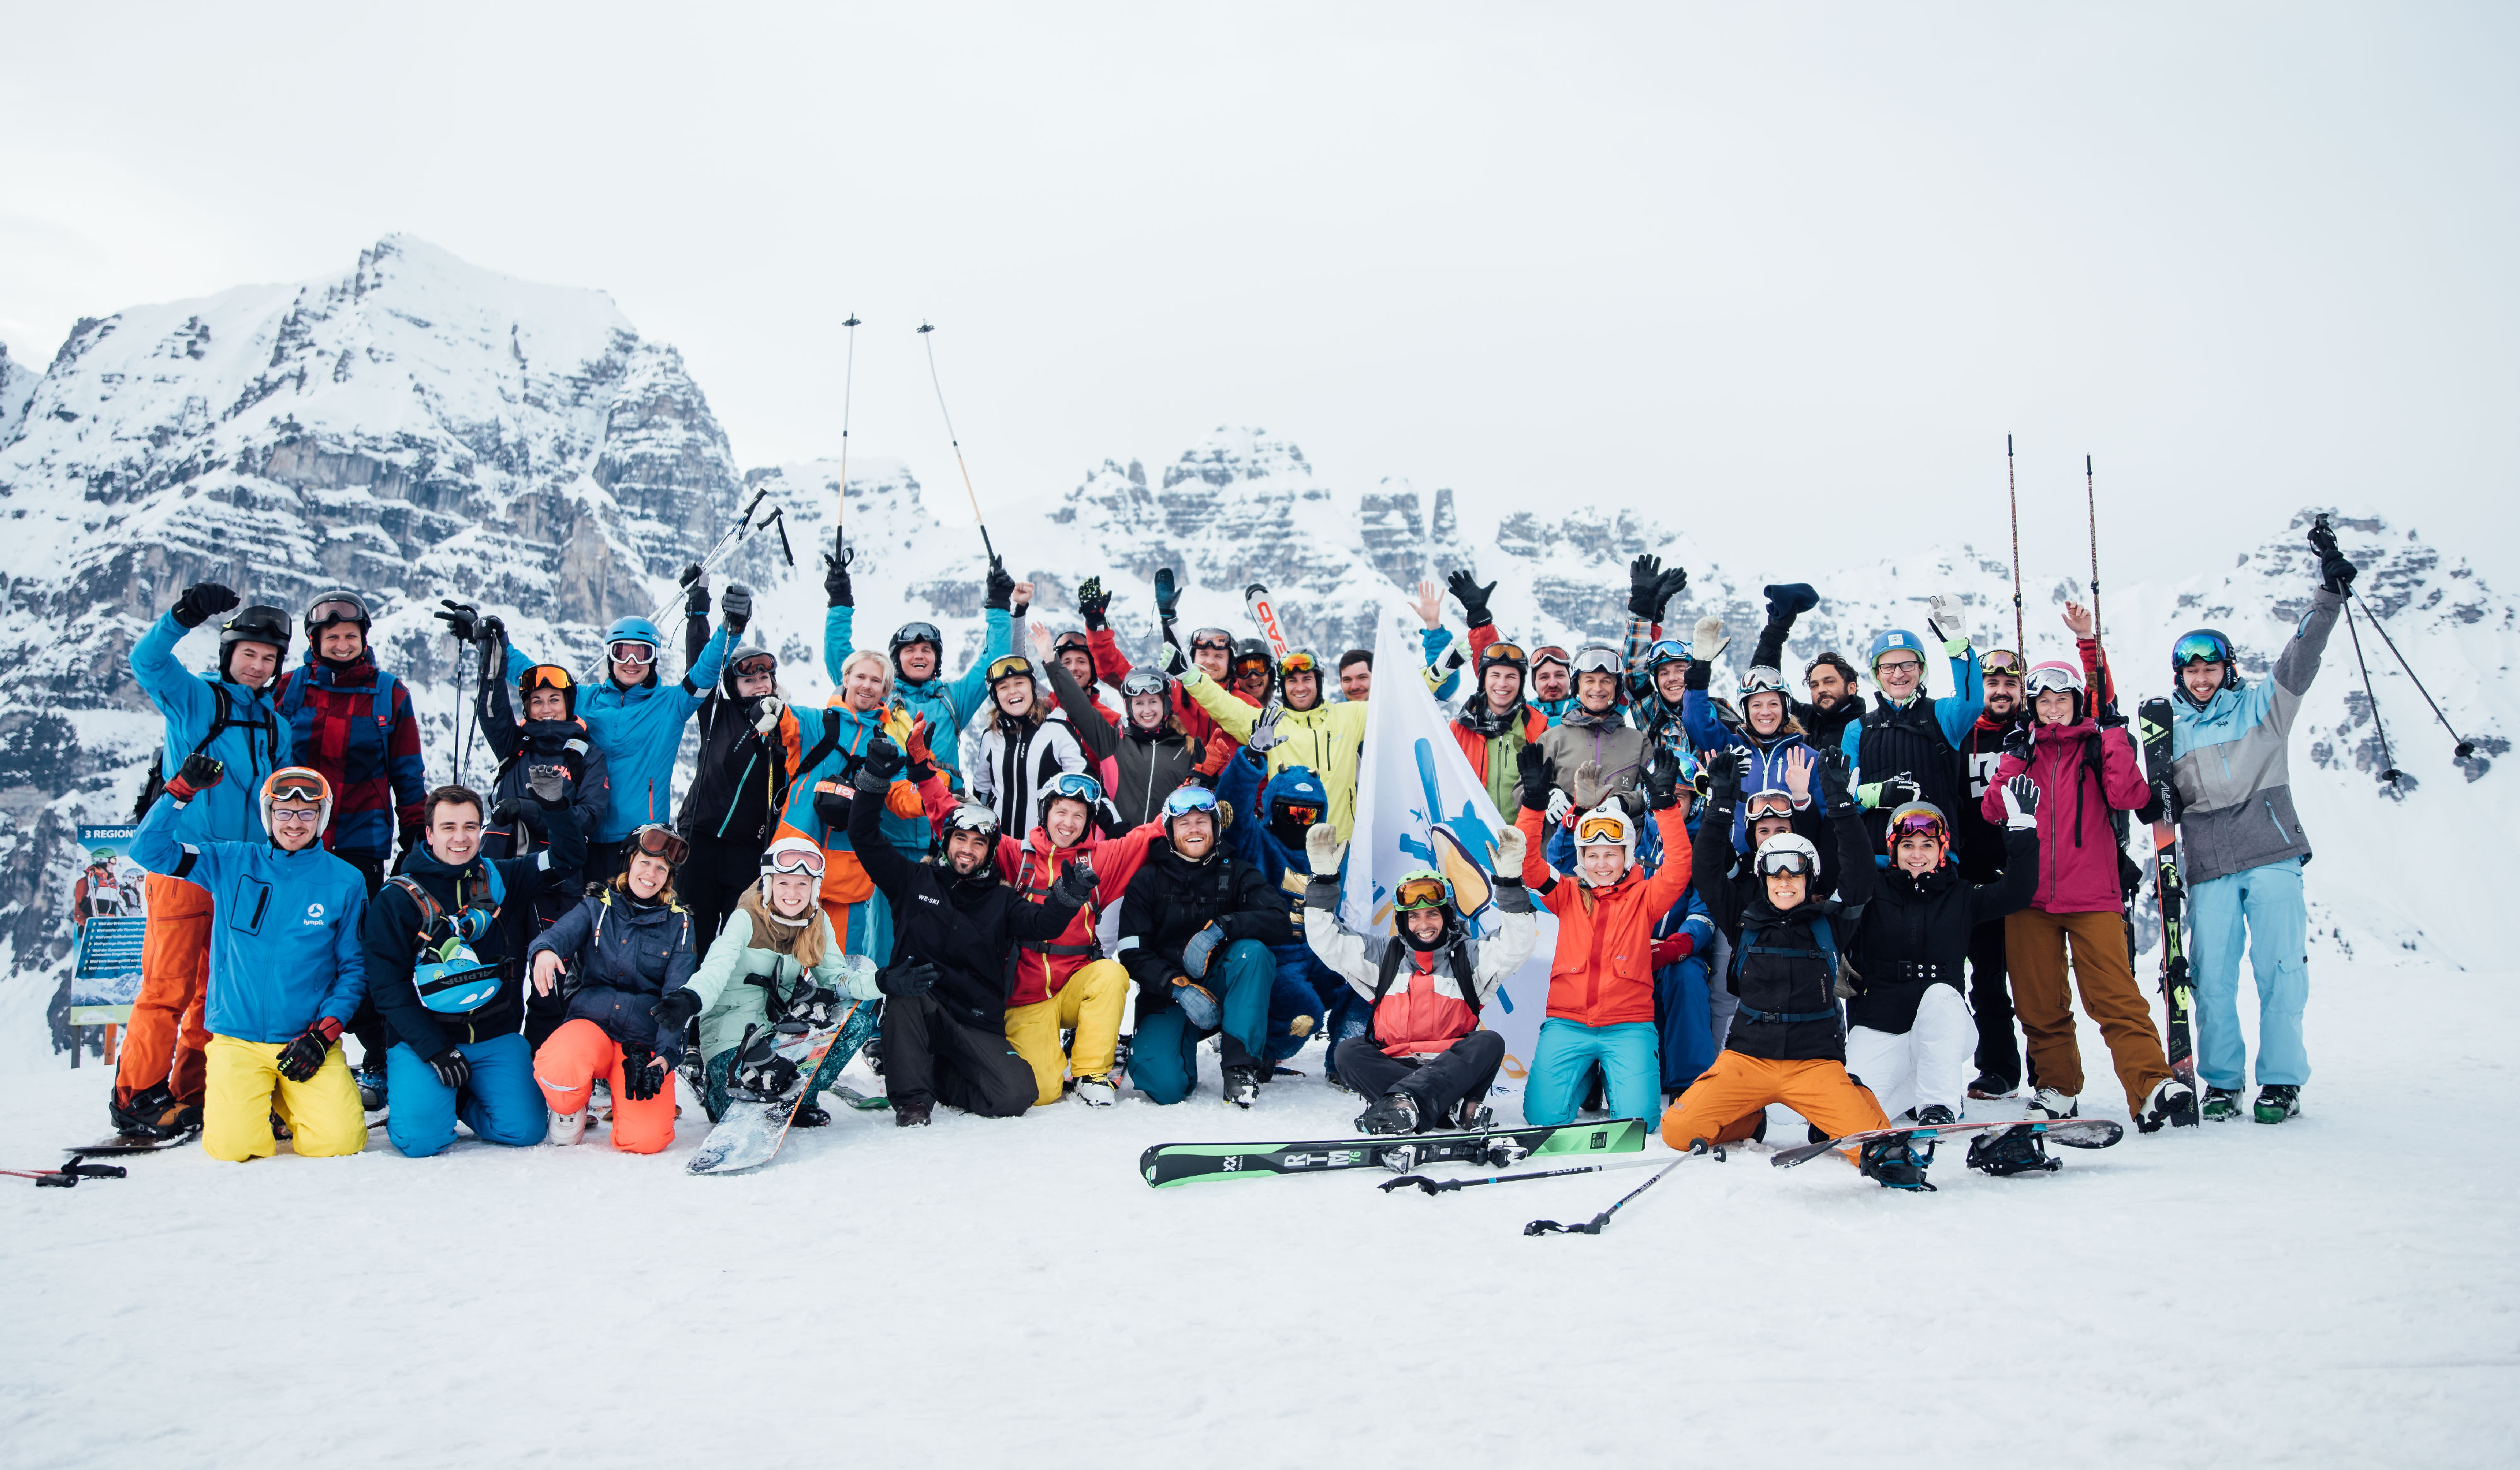 Skinnovation 2019: Die erste Startup-Konferenz auf Skiern | AlphaGamma